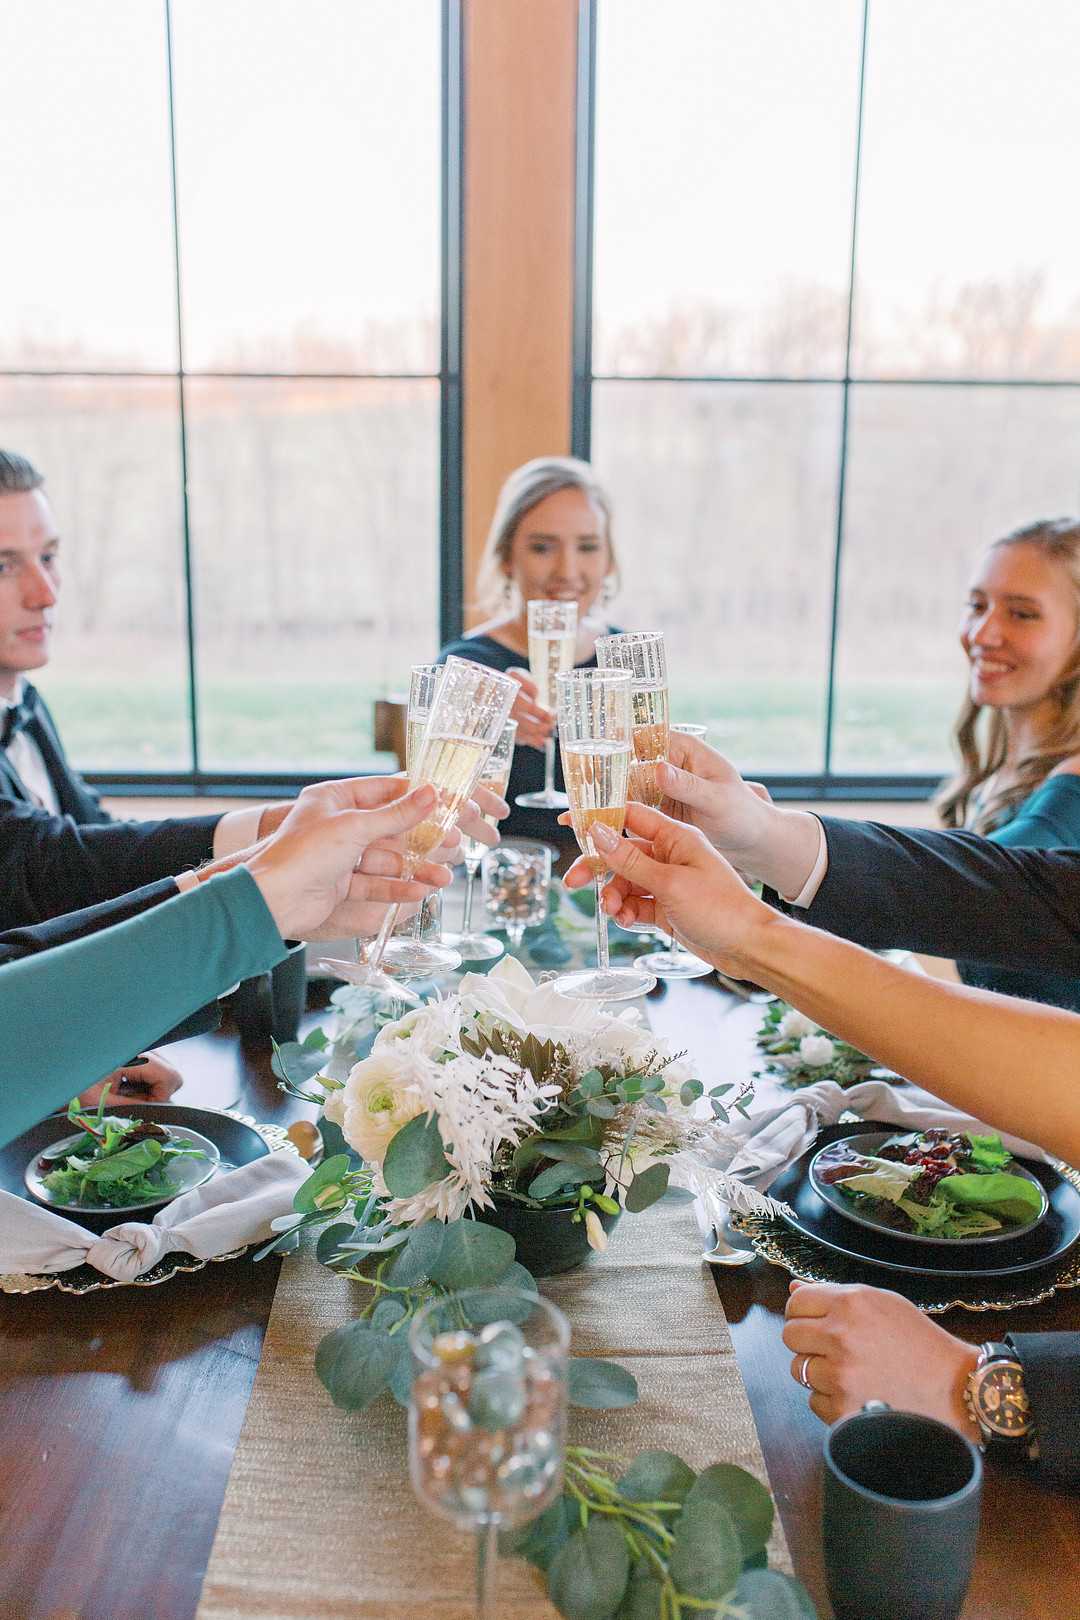 Eure Hochzeit wird mit der passenden Unterhaltung ein fröhliches Fest für eure Gäste